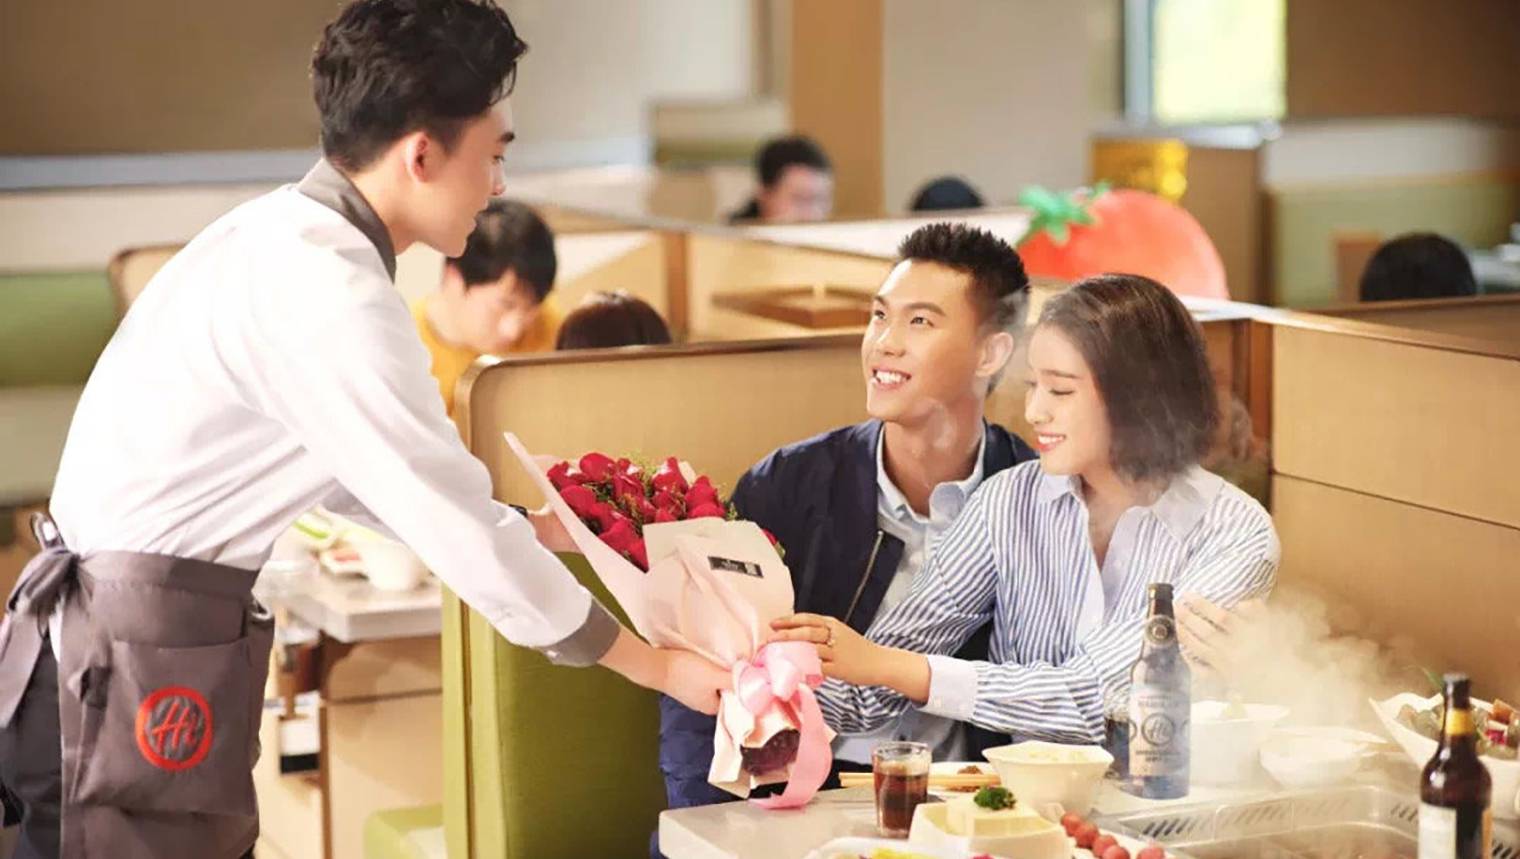 亚洲中国室侍者服务客人食物在旅馆里 库存图片. 图片 包括有 技巧, 雇佣, 托盘, 汉语, 东方, 员工 - 37934245